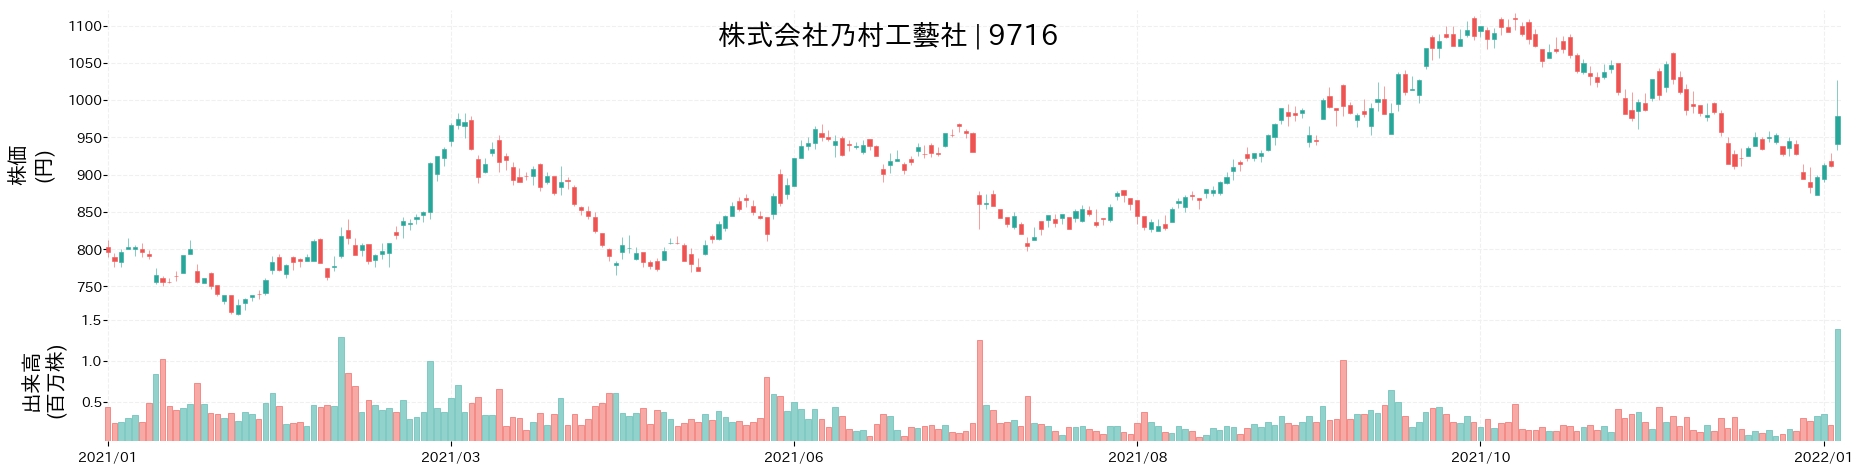 乃村工藝社の株価推移(2021)